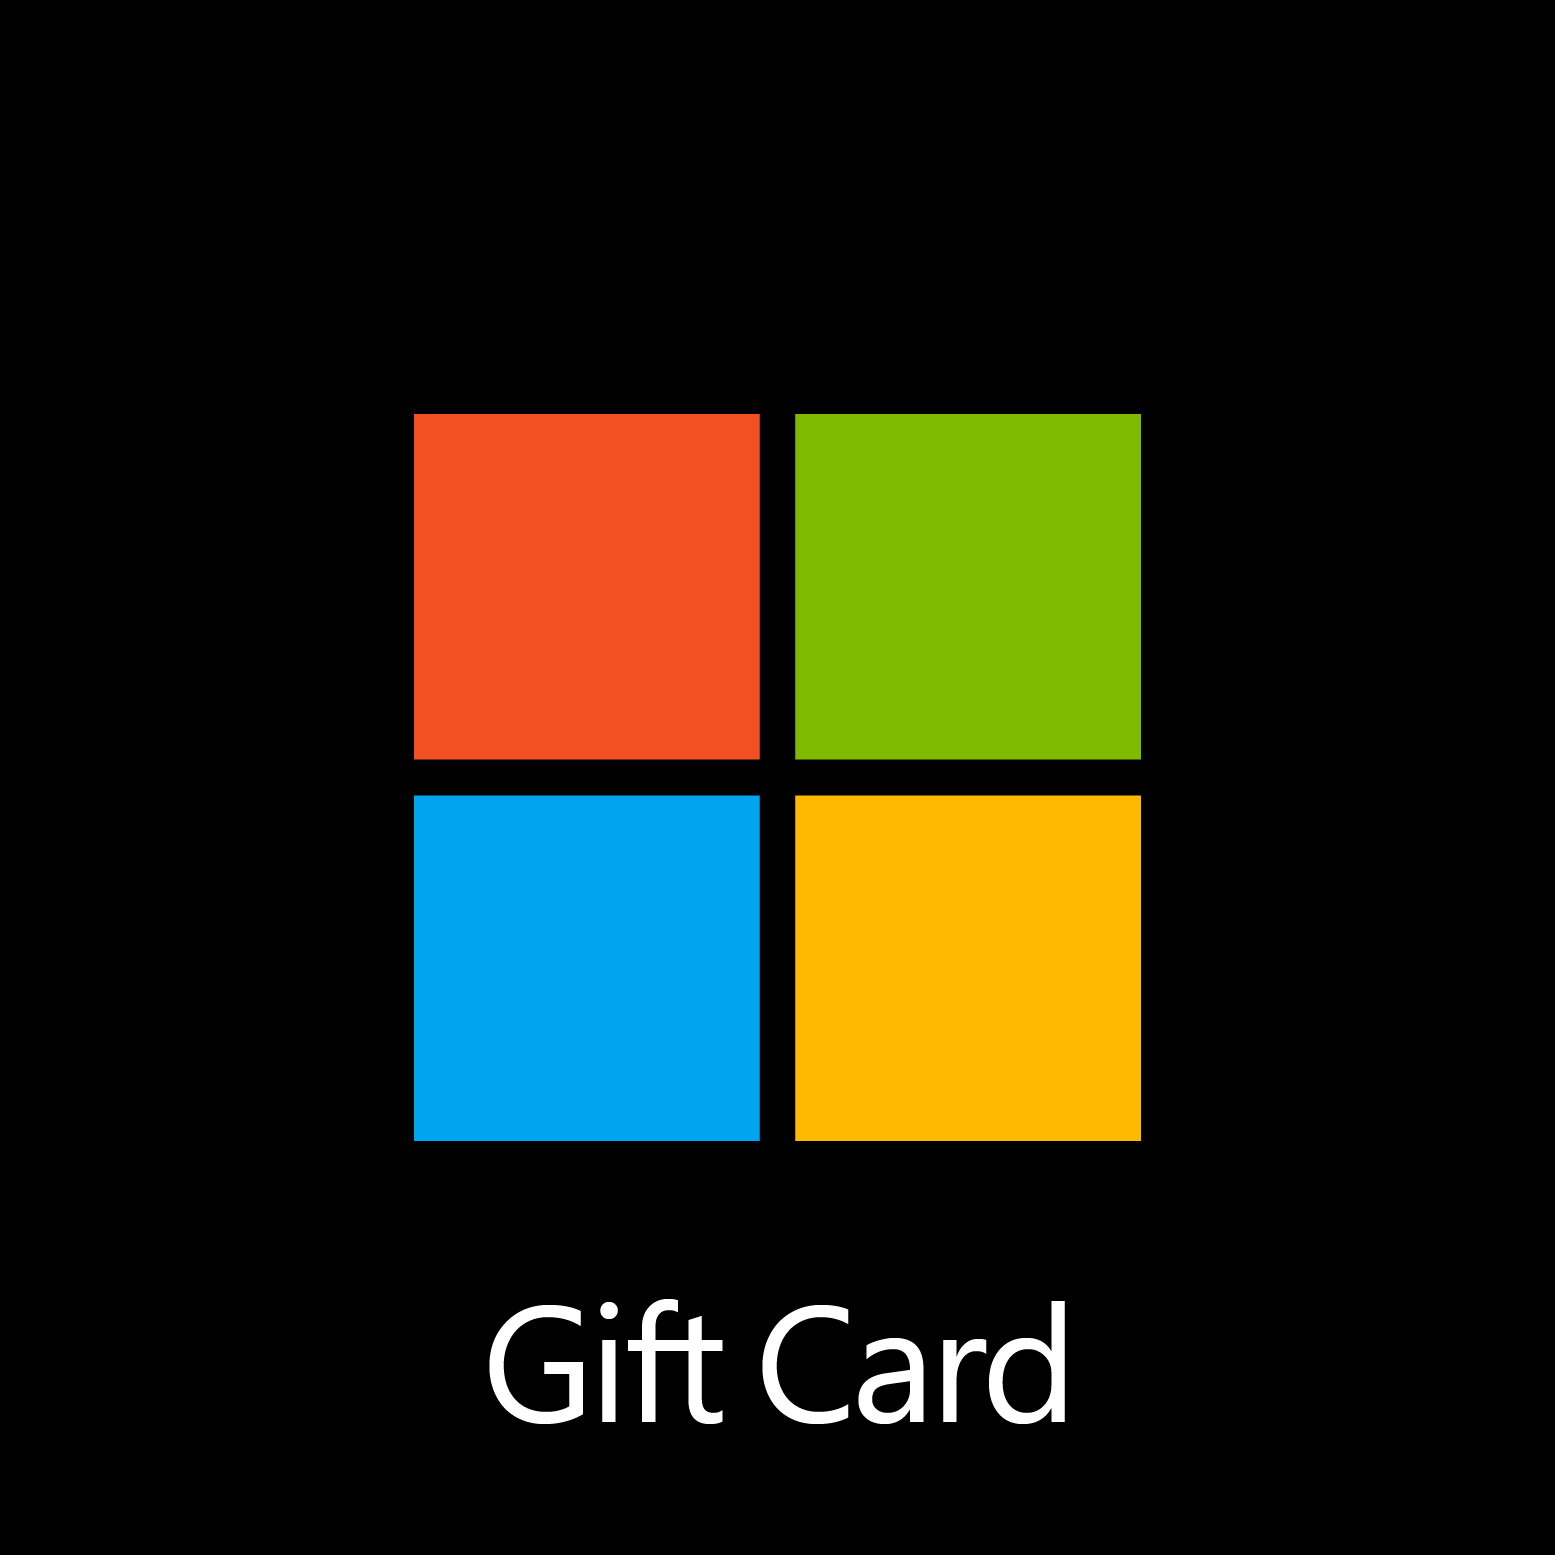 Microsoft Gift Card - Digital Code: £20.00